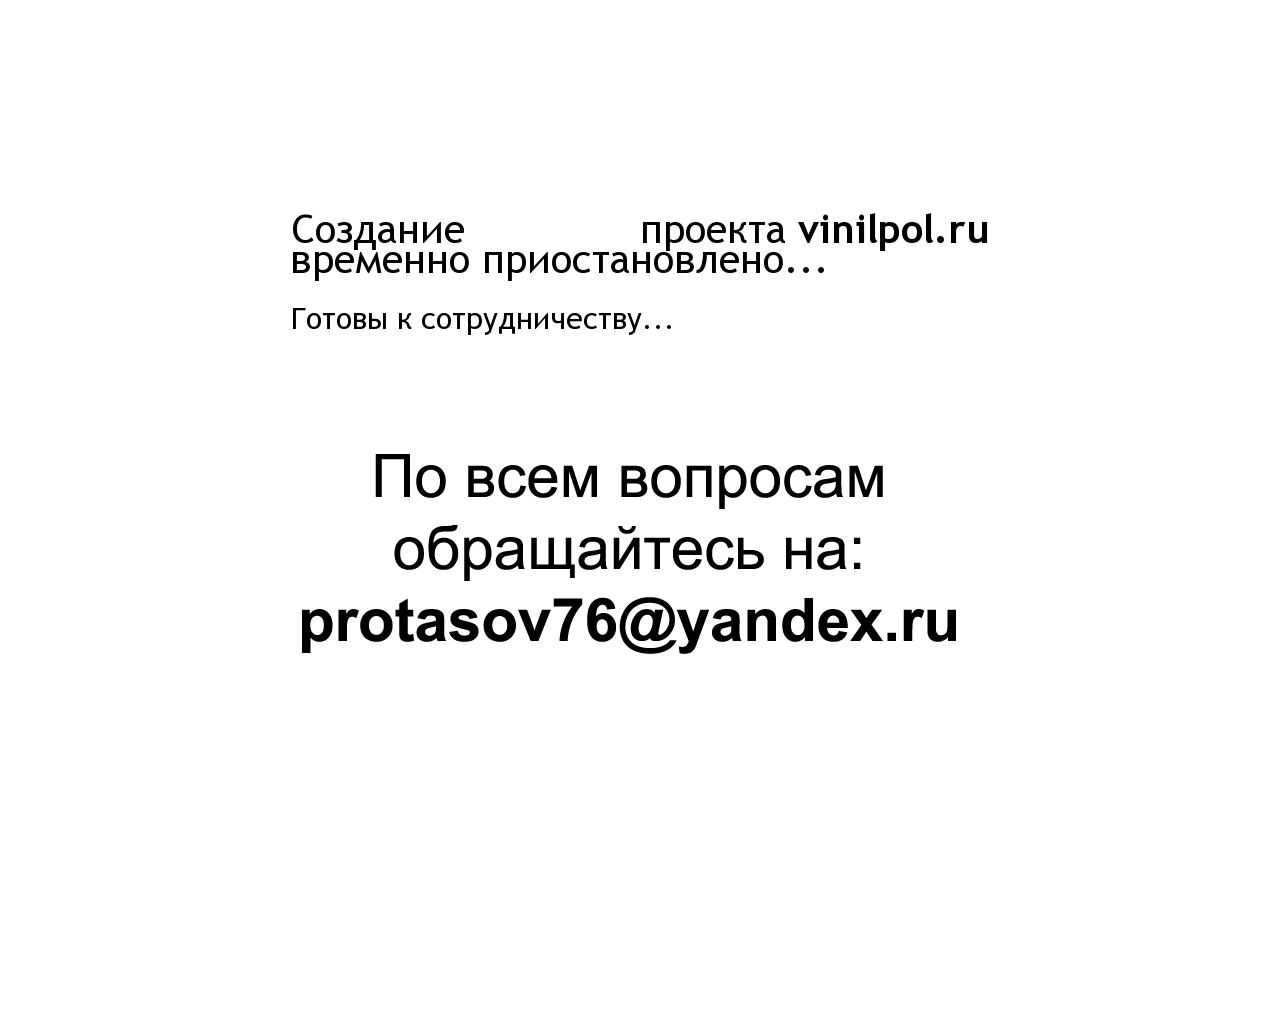 Изображение сайта vinilpol.ru в разрешении 1280x1024